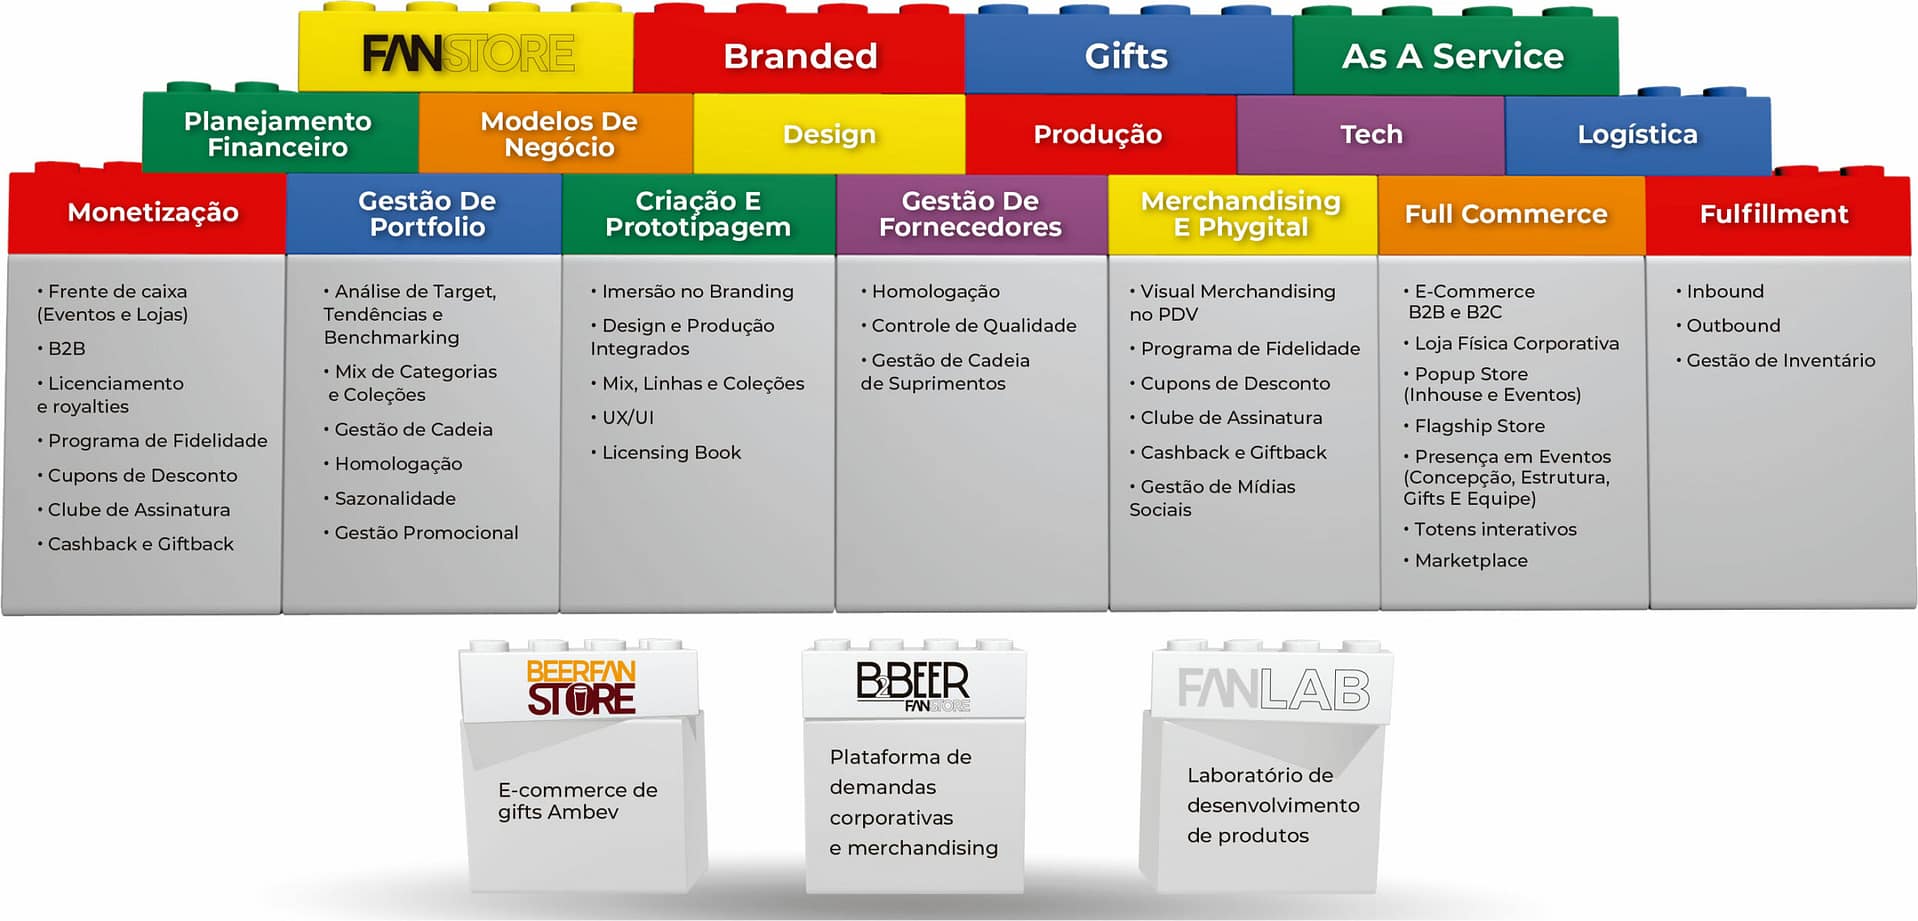 Banner com ilustração de lego coloridos contendo informações da marca Fanstore